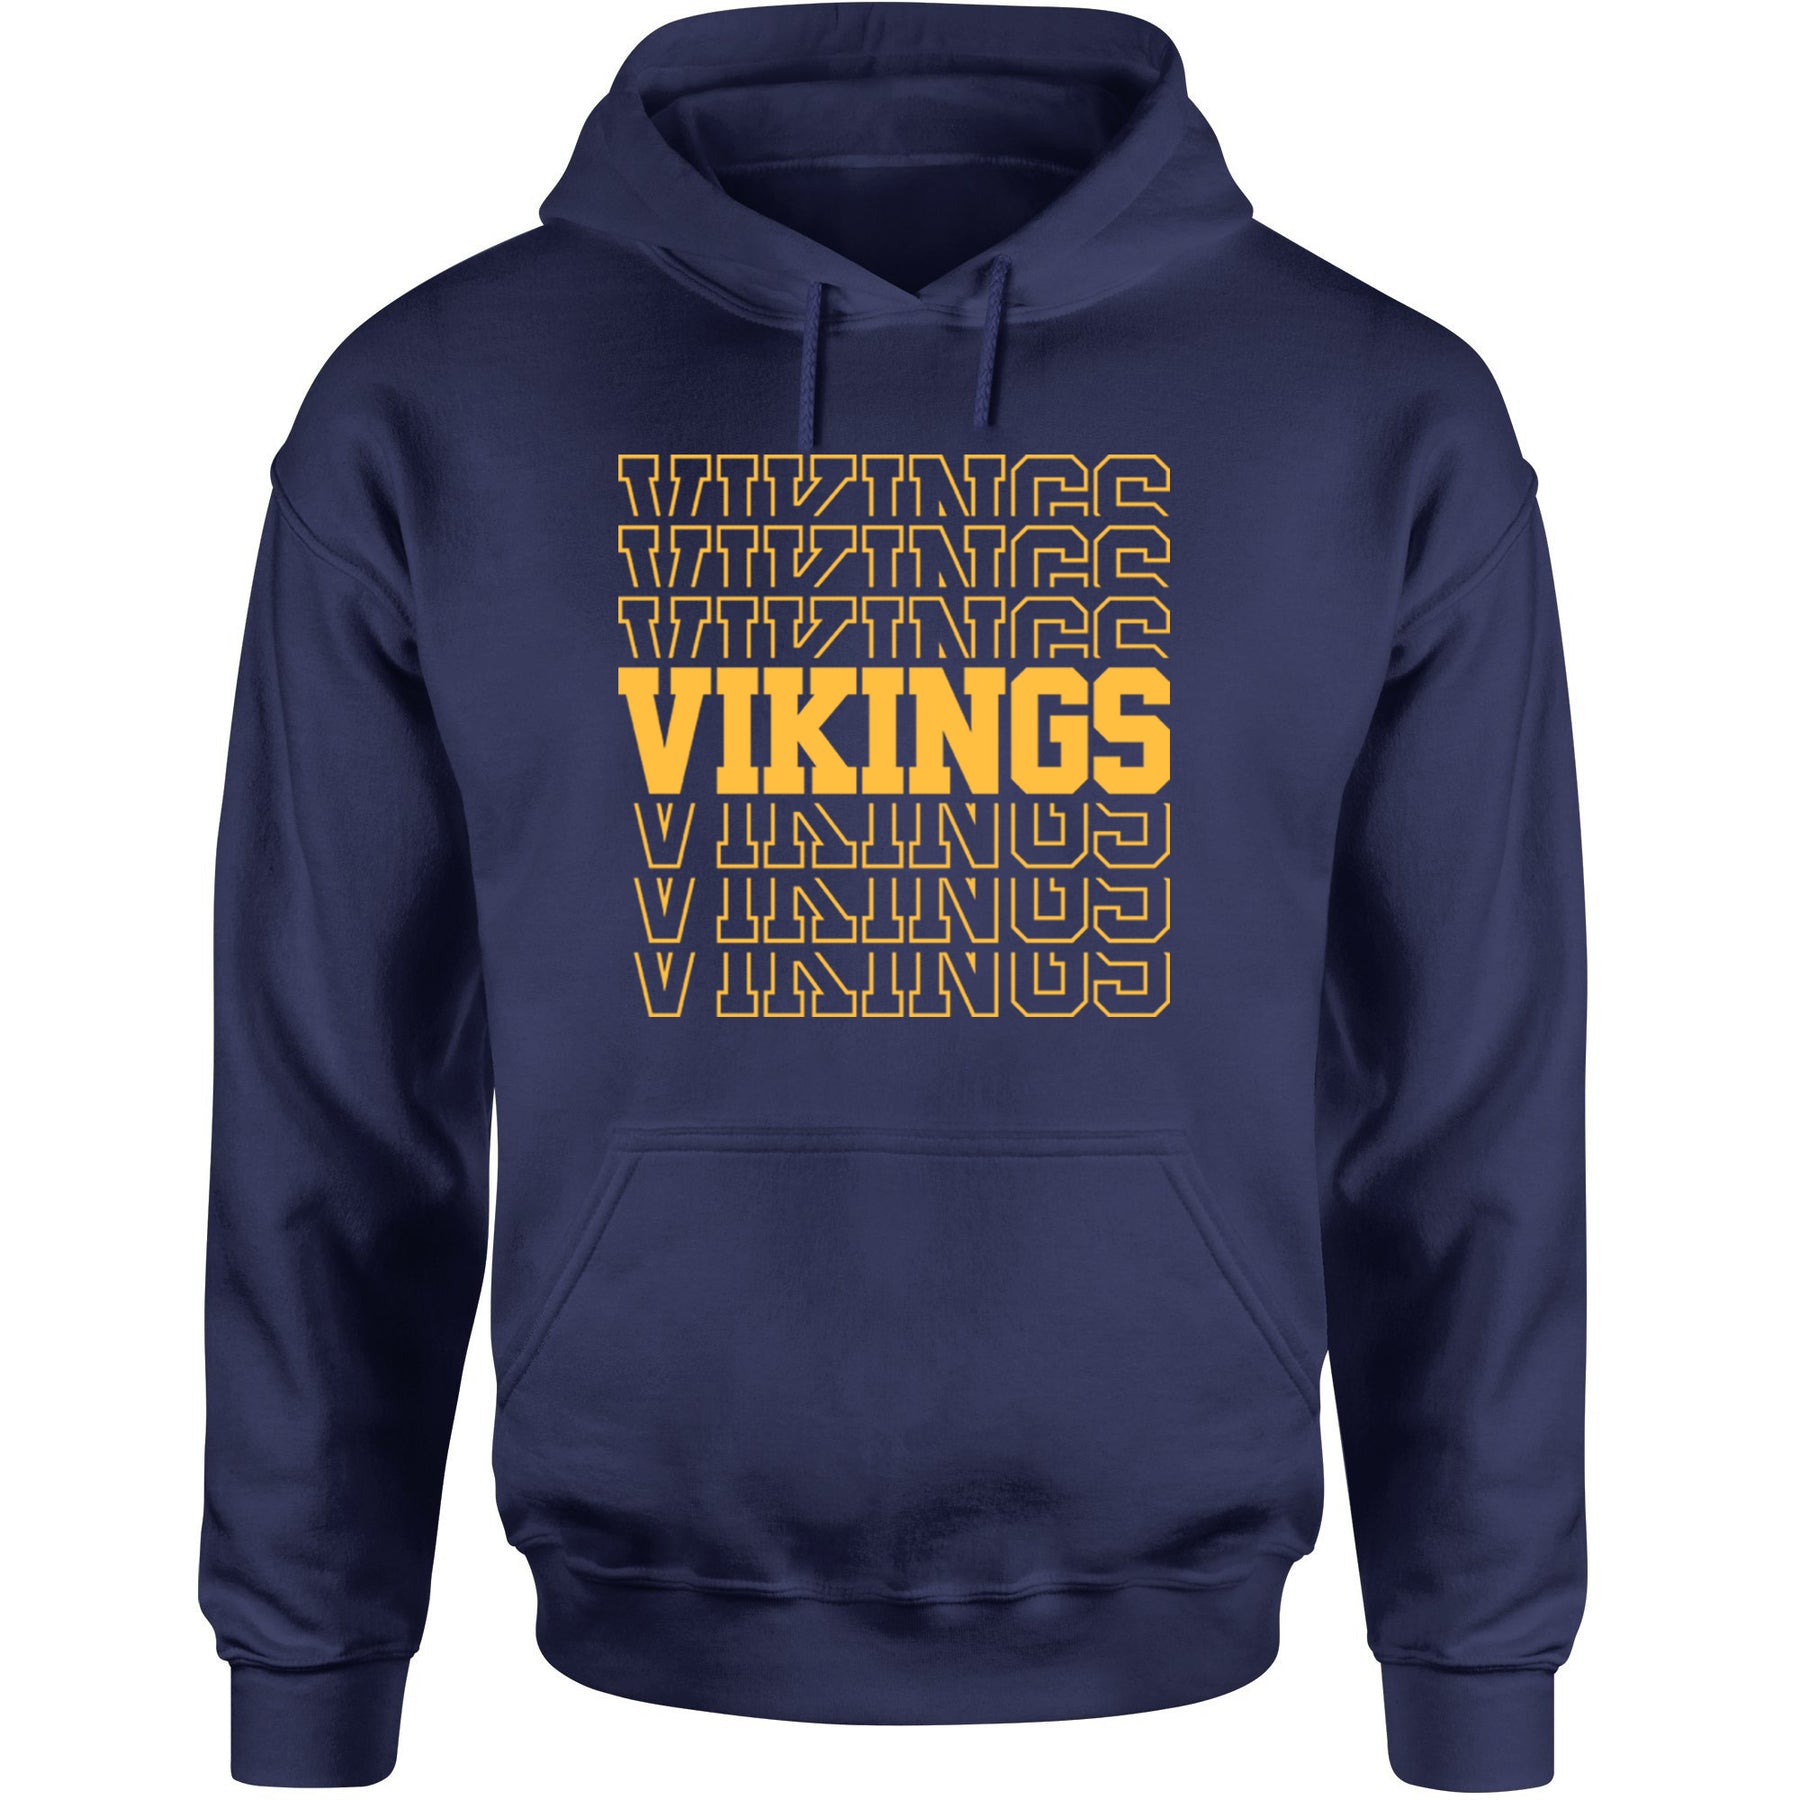 Vikings Hooded Sweatshirt